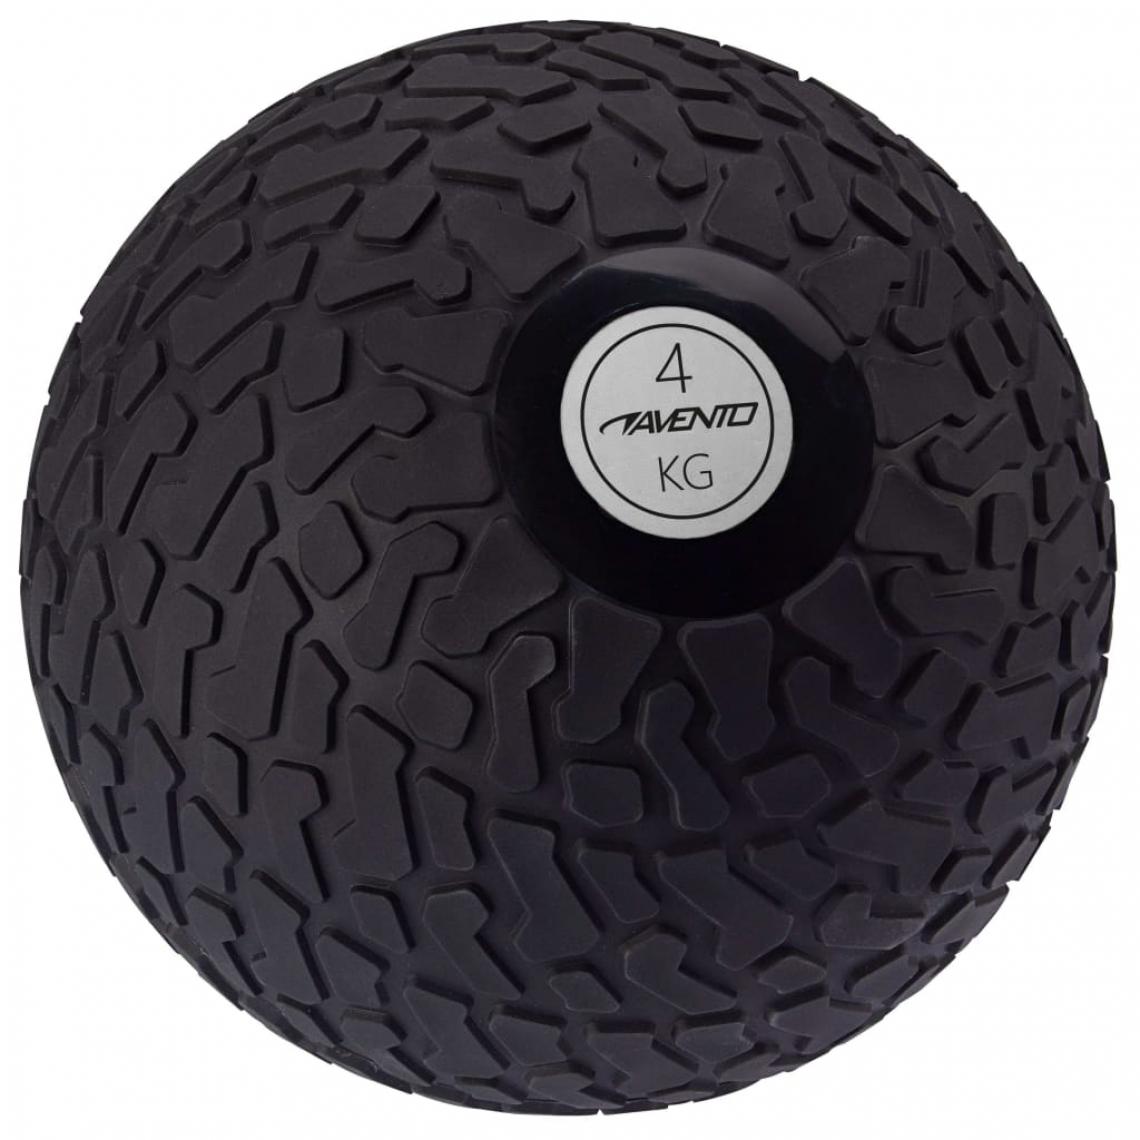 Avento - Avento Balle texturée 4 kg Noir - Jeux de balles